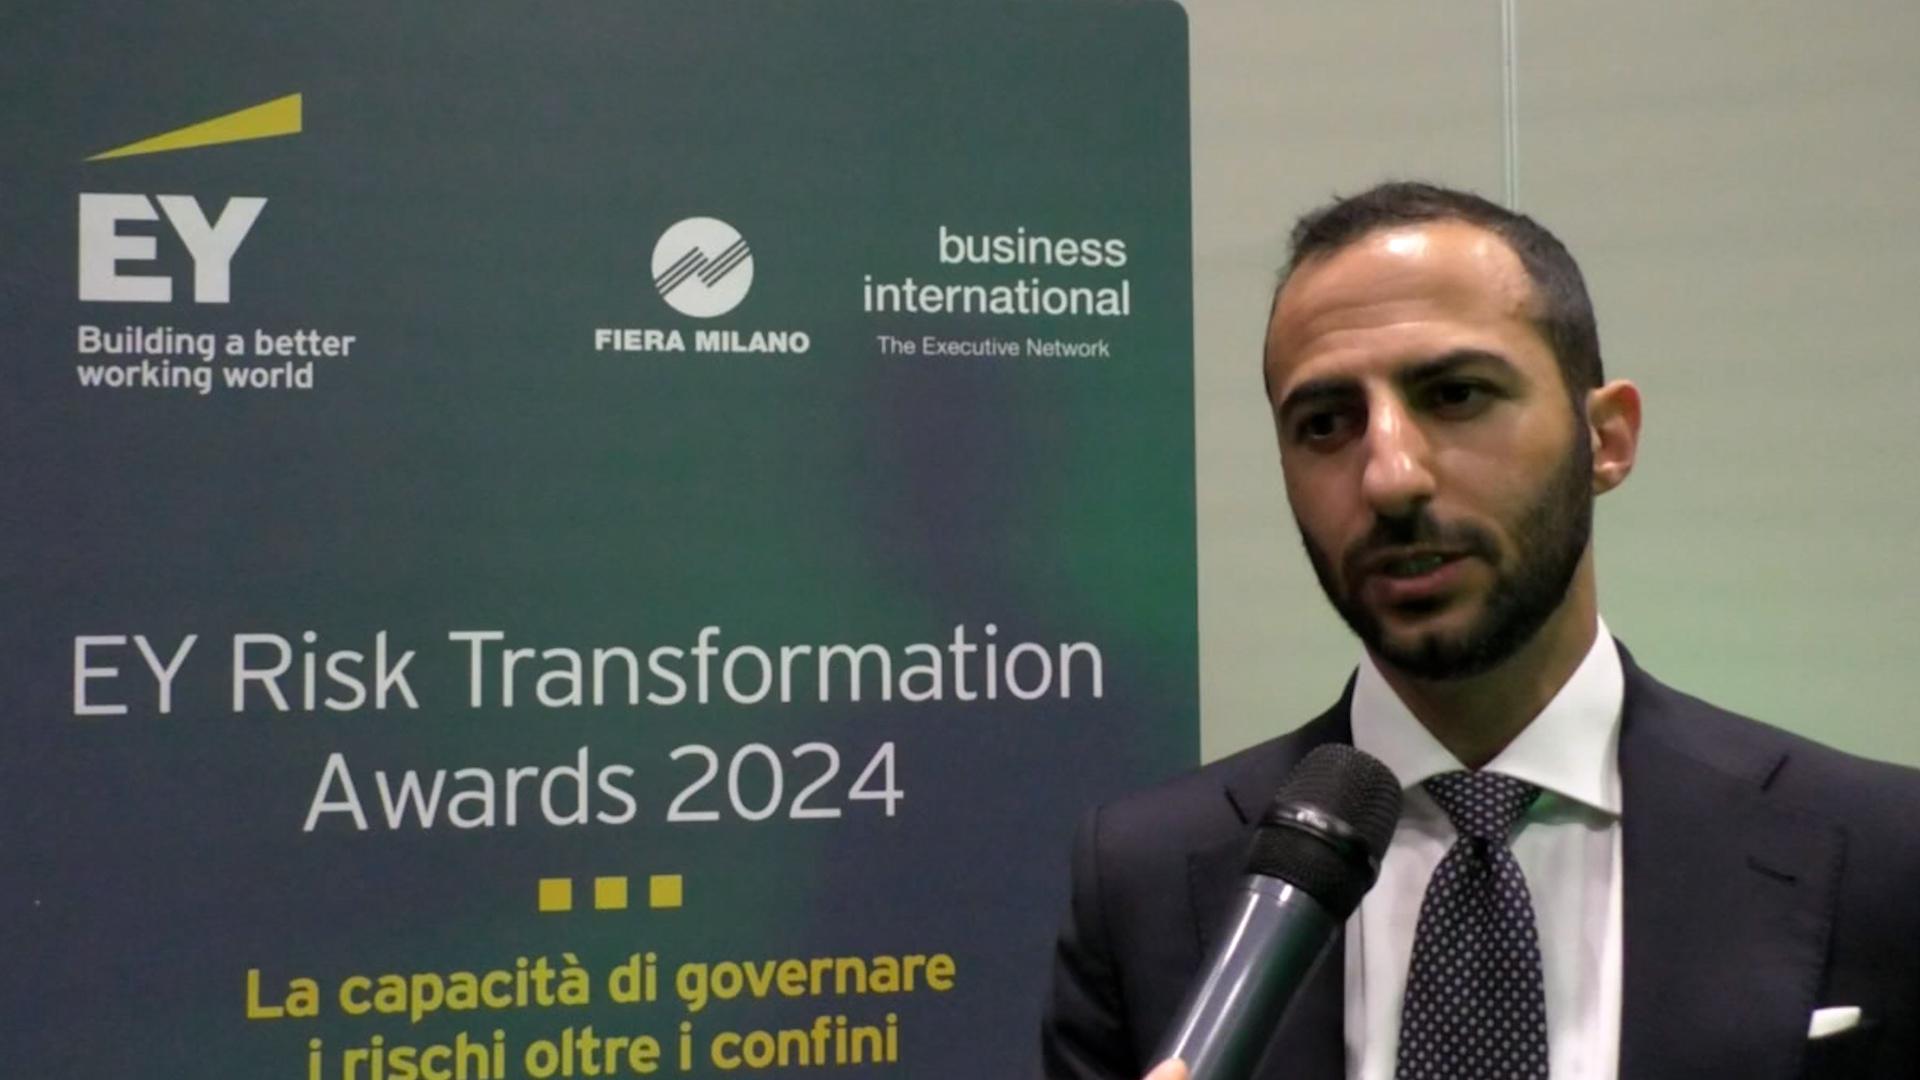 Imprese - Costantini: EY transformation awards celebrano approcci distintivi a gestione rischio